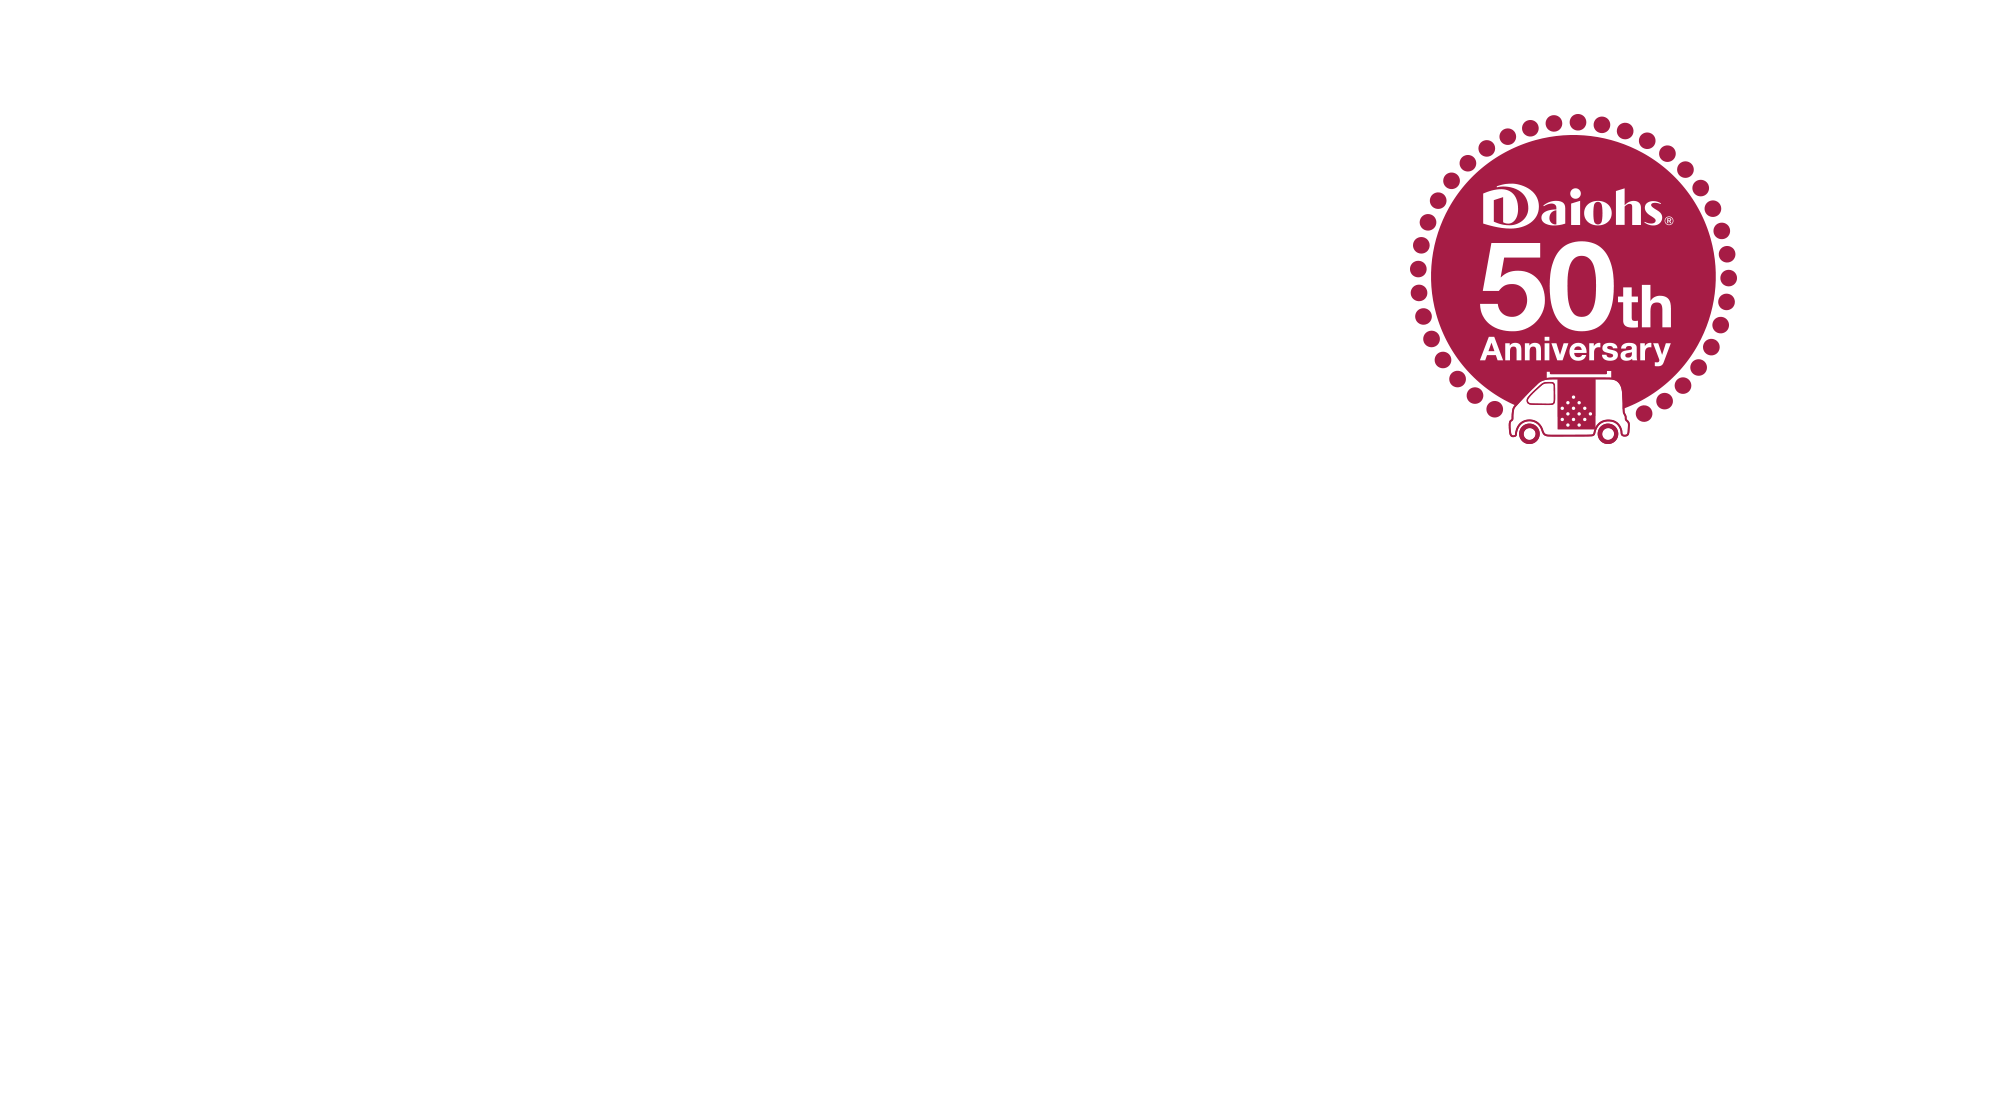 HISTORY OF Daiohs RUN!これからも走り続けます。株式会社ダイオーズ50周年